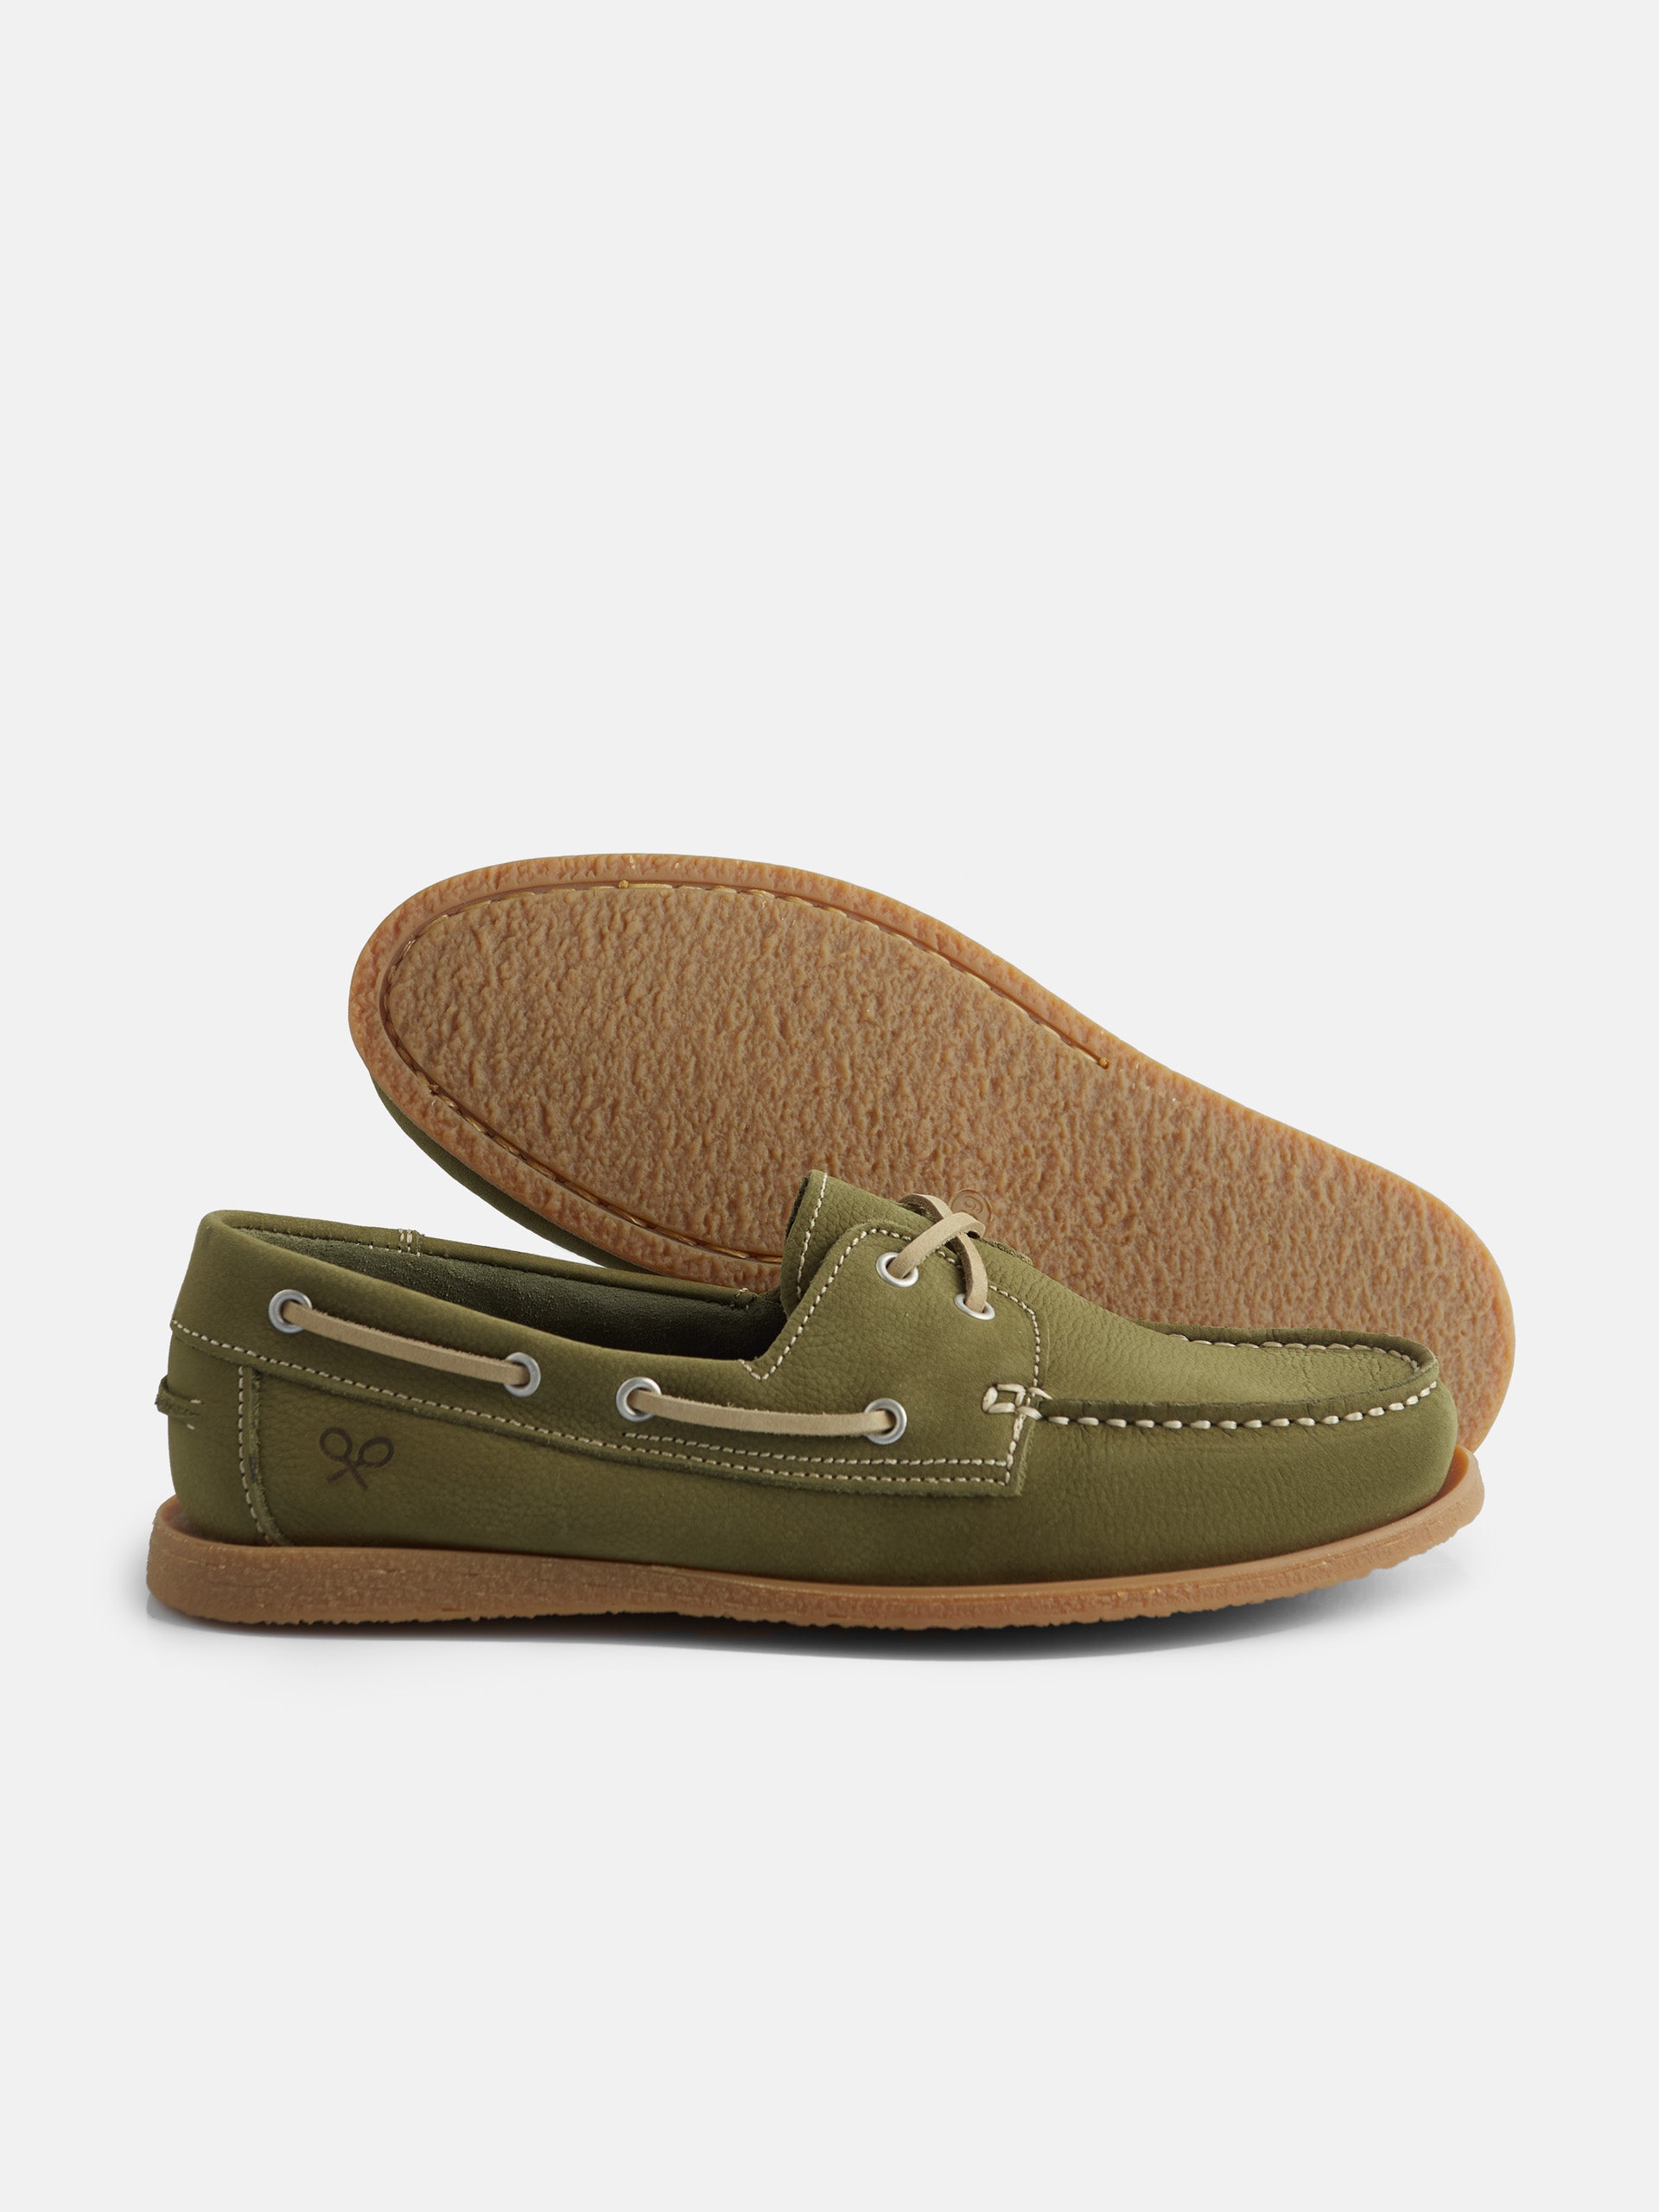 Zapato nautico verde